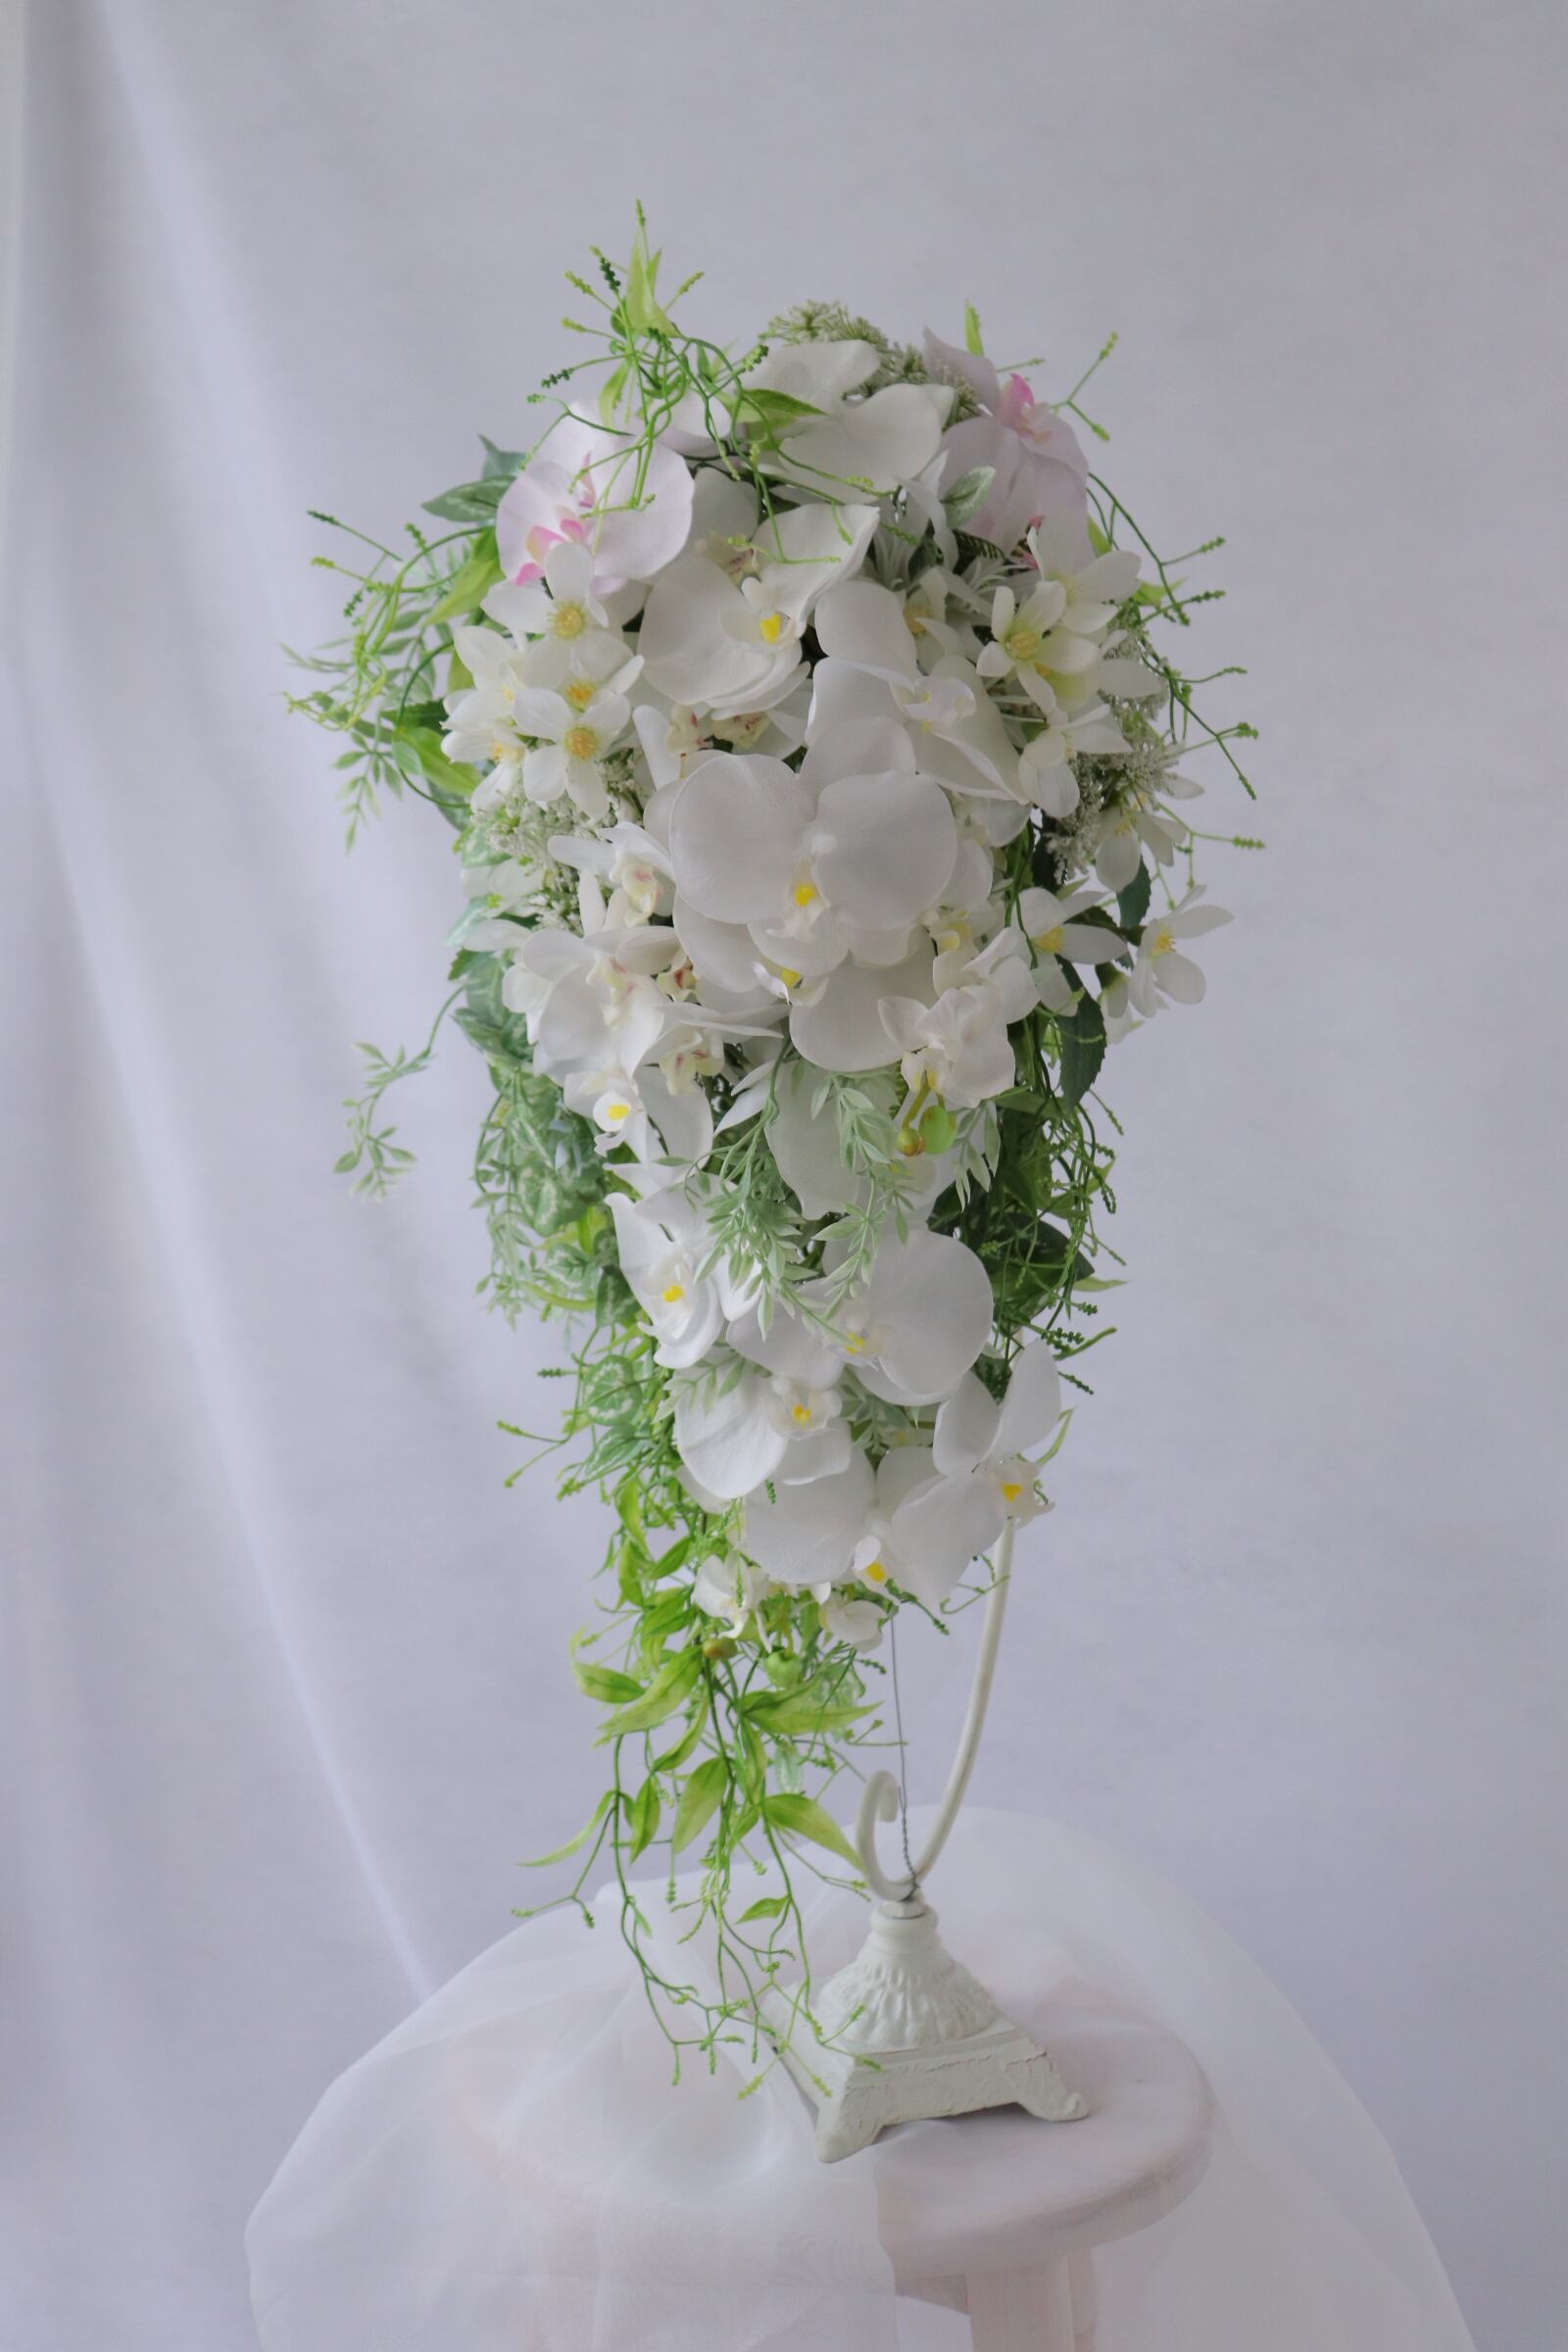 桜キャスケードブーケ さくらブーケ 胡蝶蘭ブーケ 結婚式 造花ブーケ 和婚 和装造花ブーケ